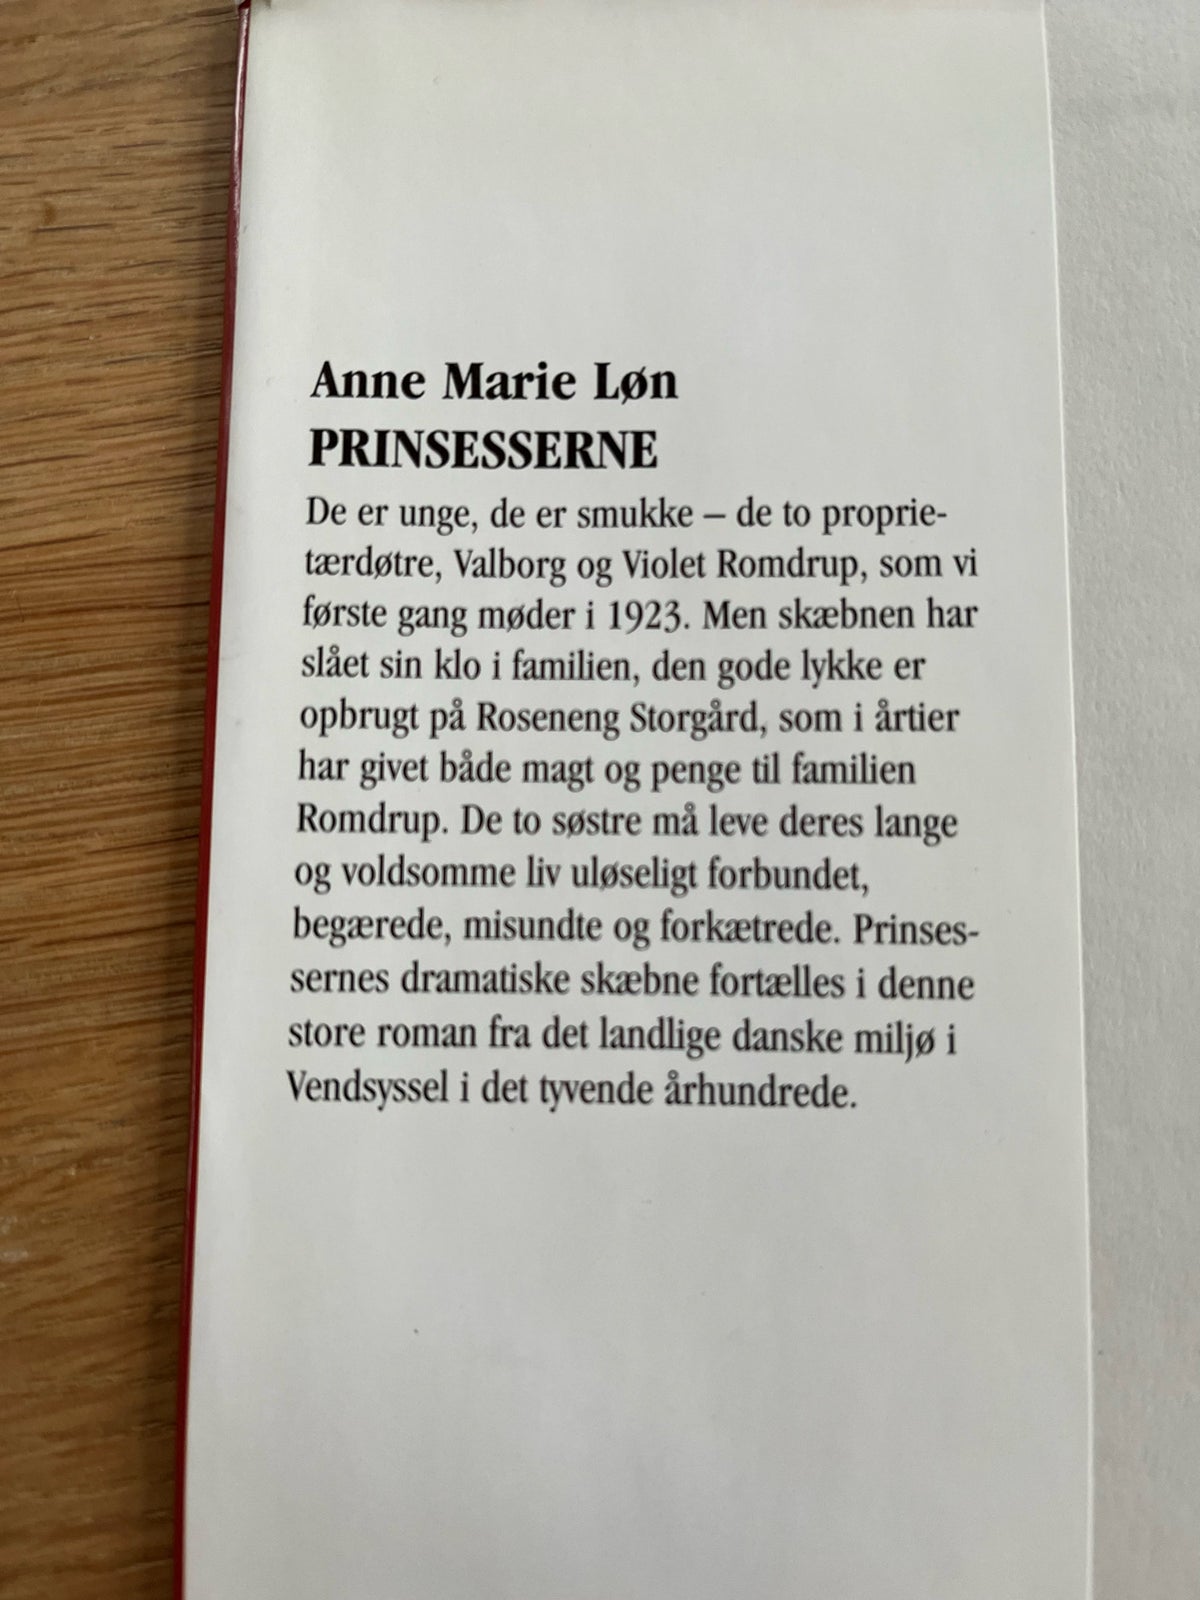 Prinsesserne, Anna Marie Løn, genre: roman